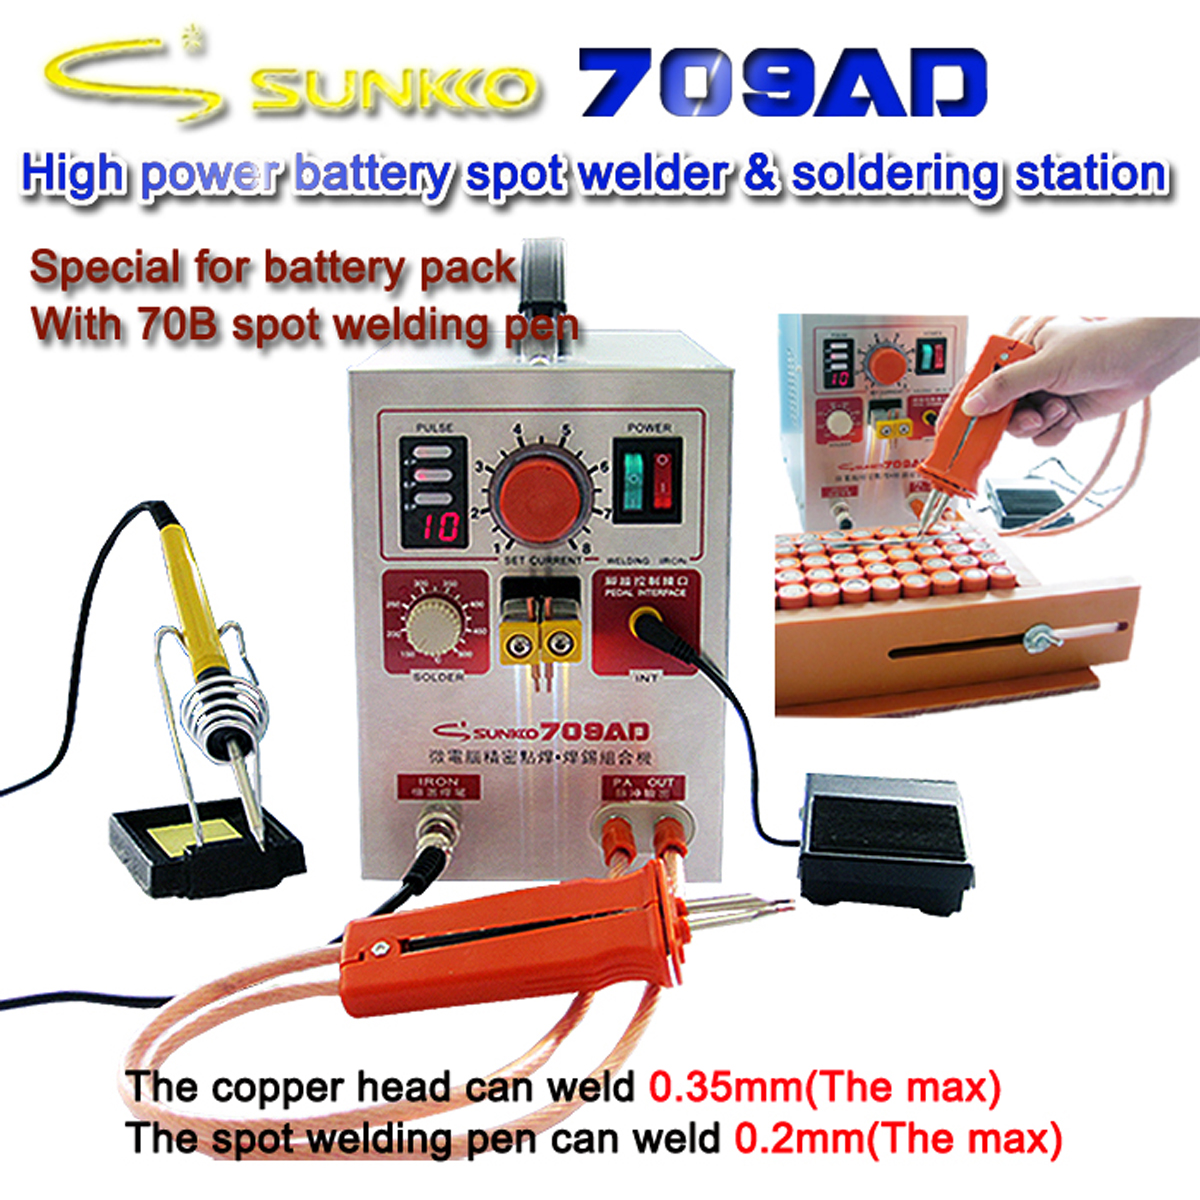 SUNKKO-709AD-22KW-110V220V-Spot-Welder-High-Power-Battery-Digital-Mobile-Soldering-Welding-Machine-1-1479650-2